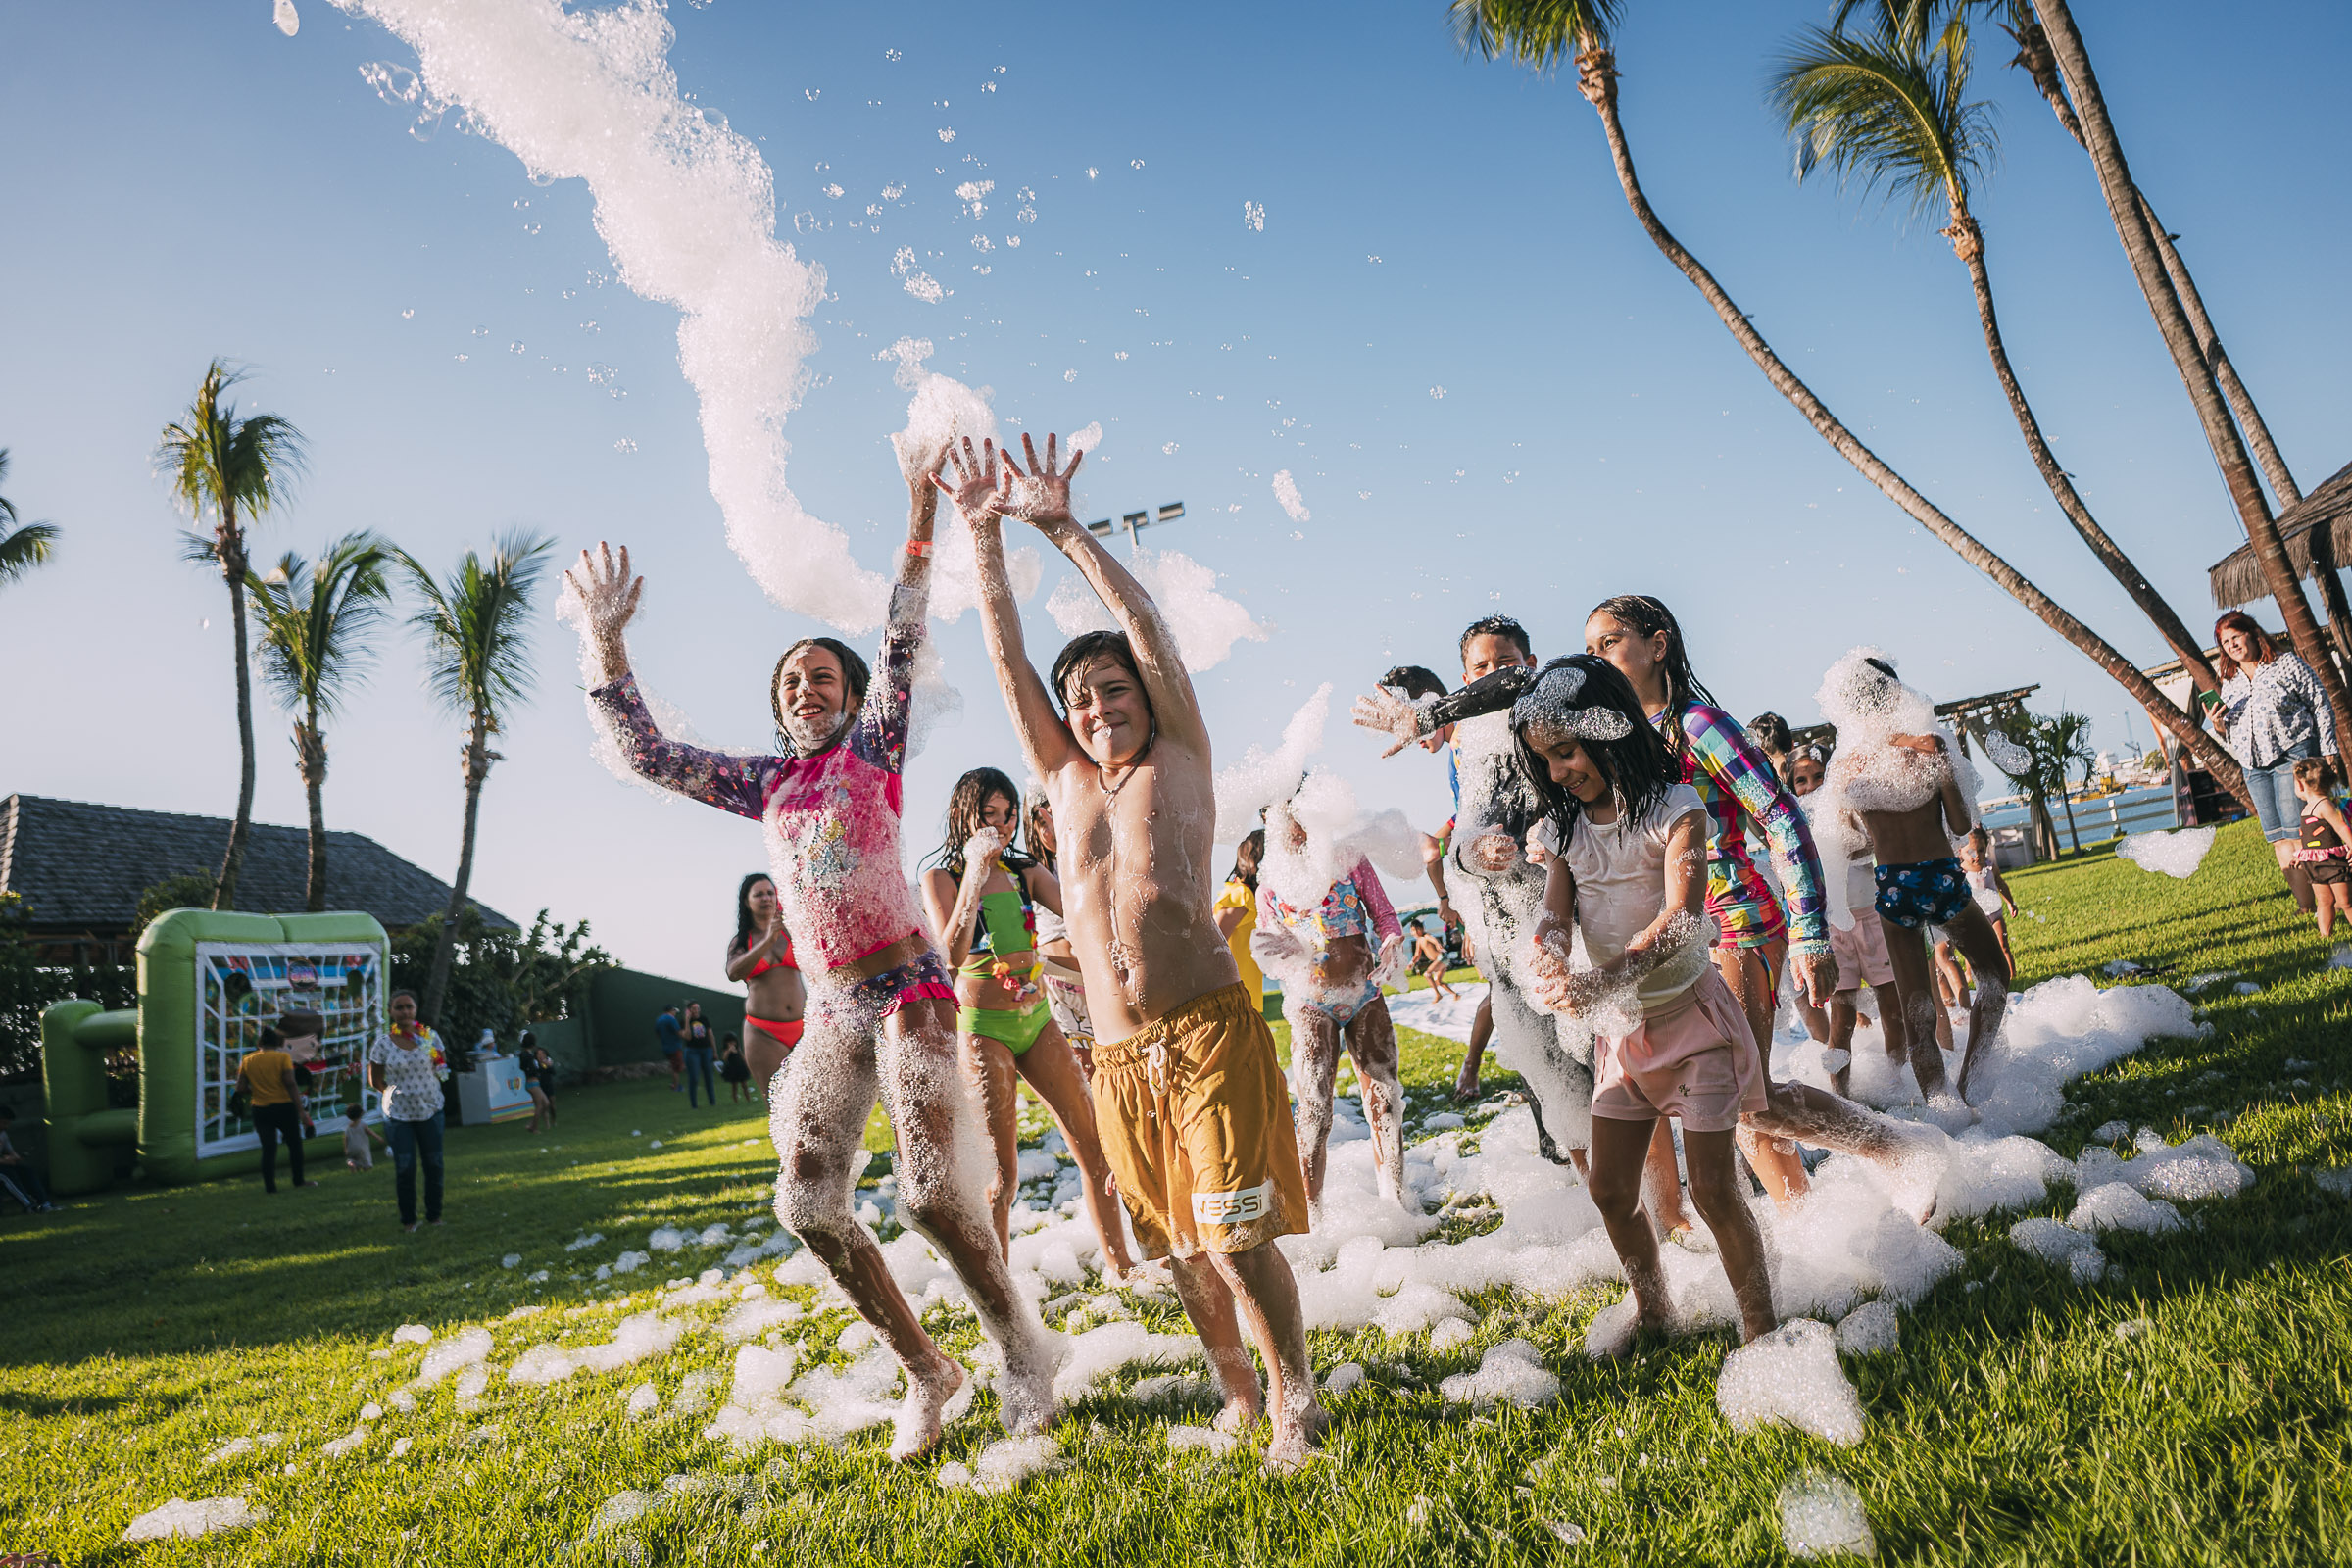 Música e diversão marcam o fim de semana do Iate Clube de Fortaleza com o Bailinho do Hawaii